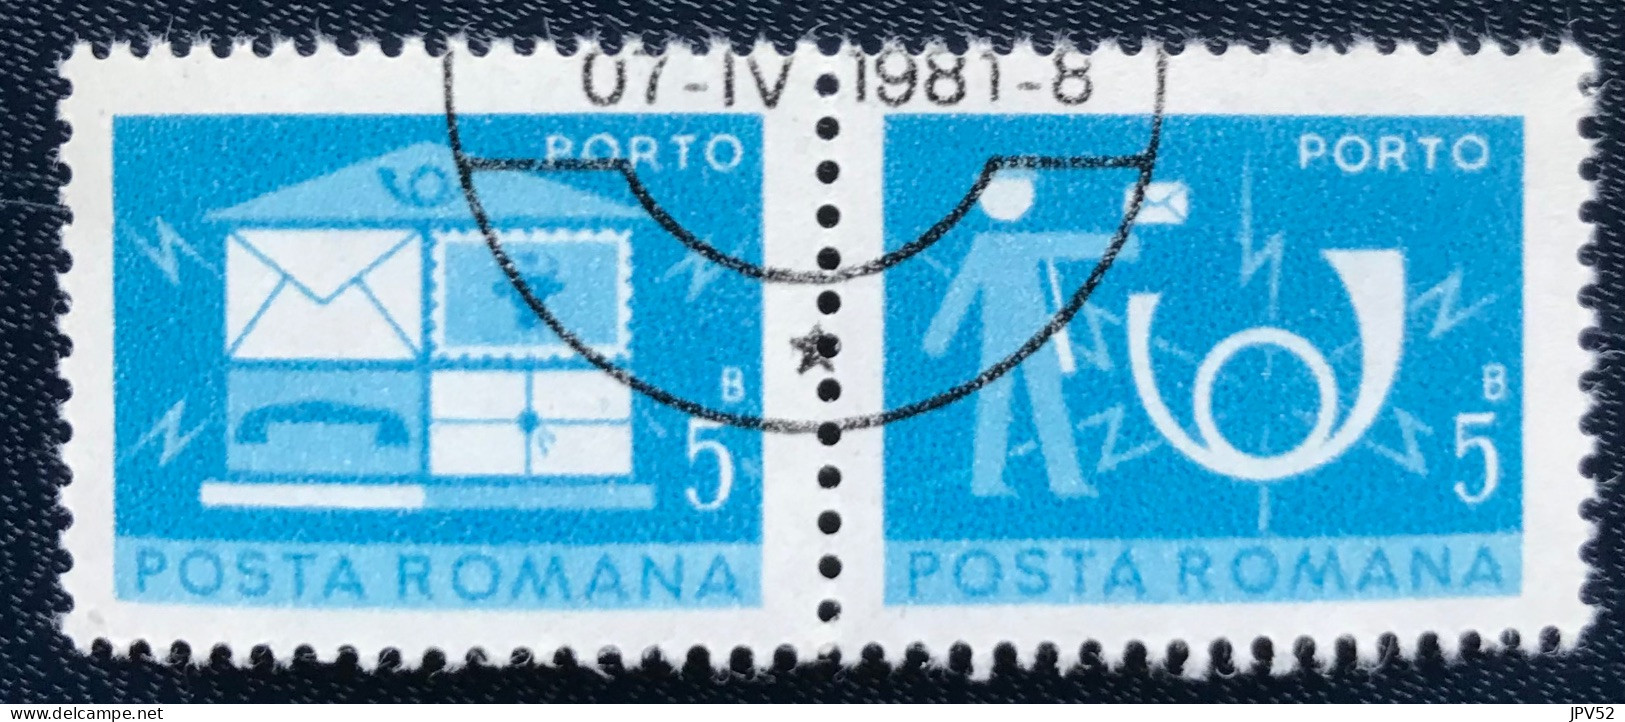 Romana - Roemenië - C14/54 - 1974 - (°)used - Michel 119 - Brievenbus & Postbode & Posthoorn - Impuestos